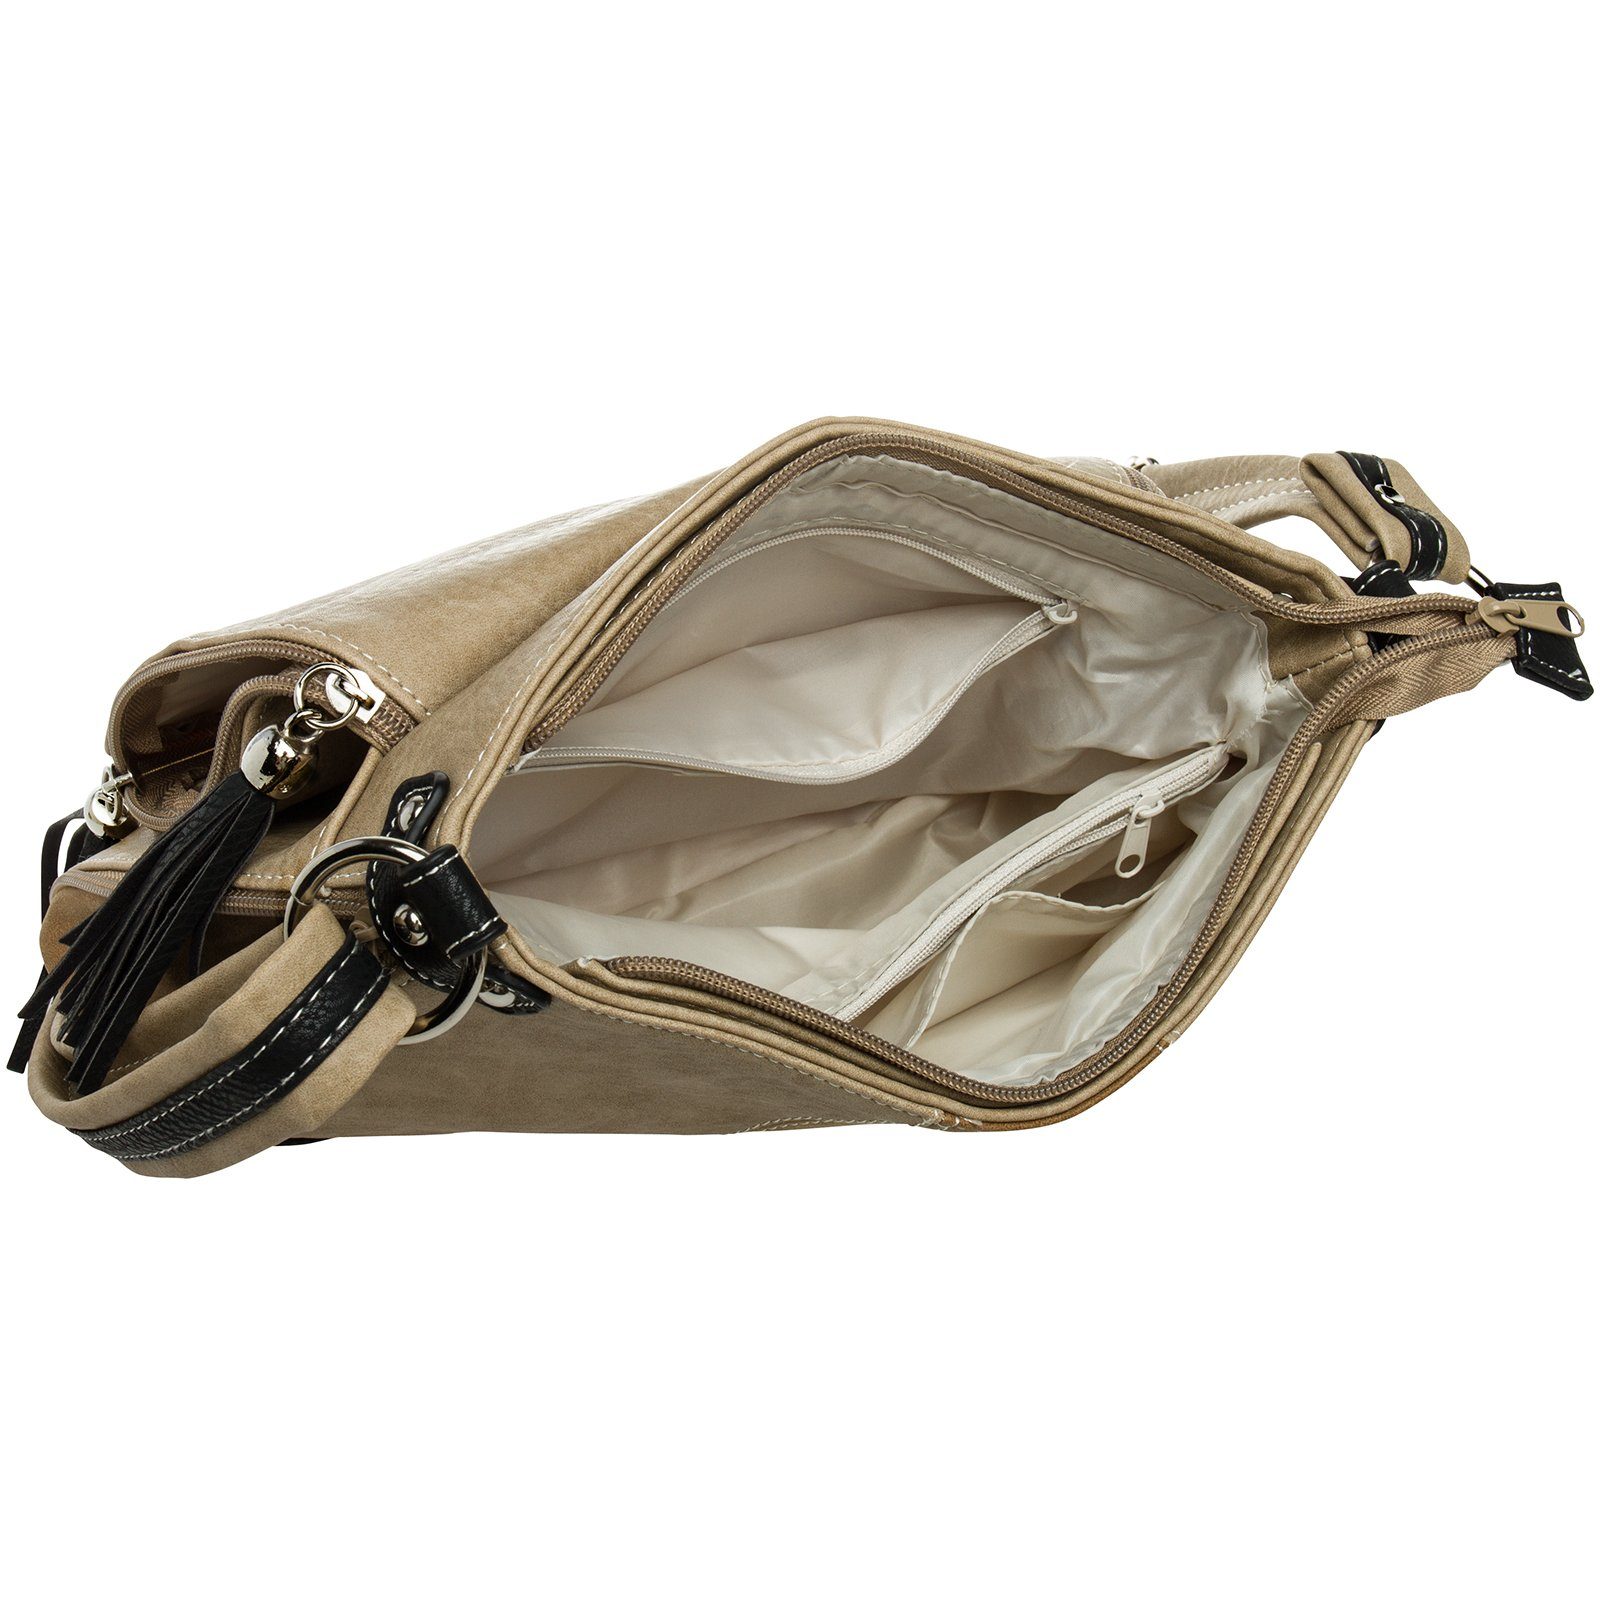 Caspar Umhängetasche Damen Modelle schwarz braun Rucksack TS1028 #15105 beige Umhängetasche - diverse Umhängetasche Handtasche Tasche